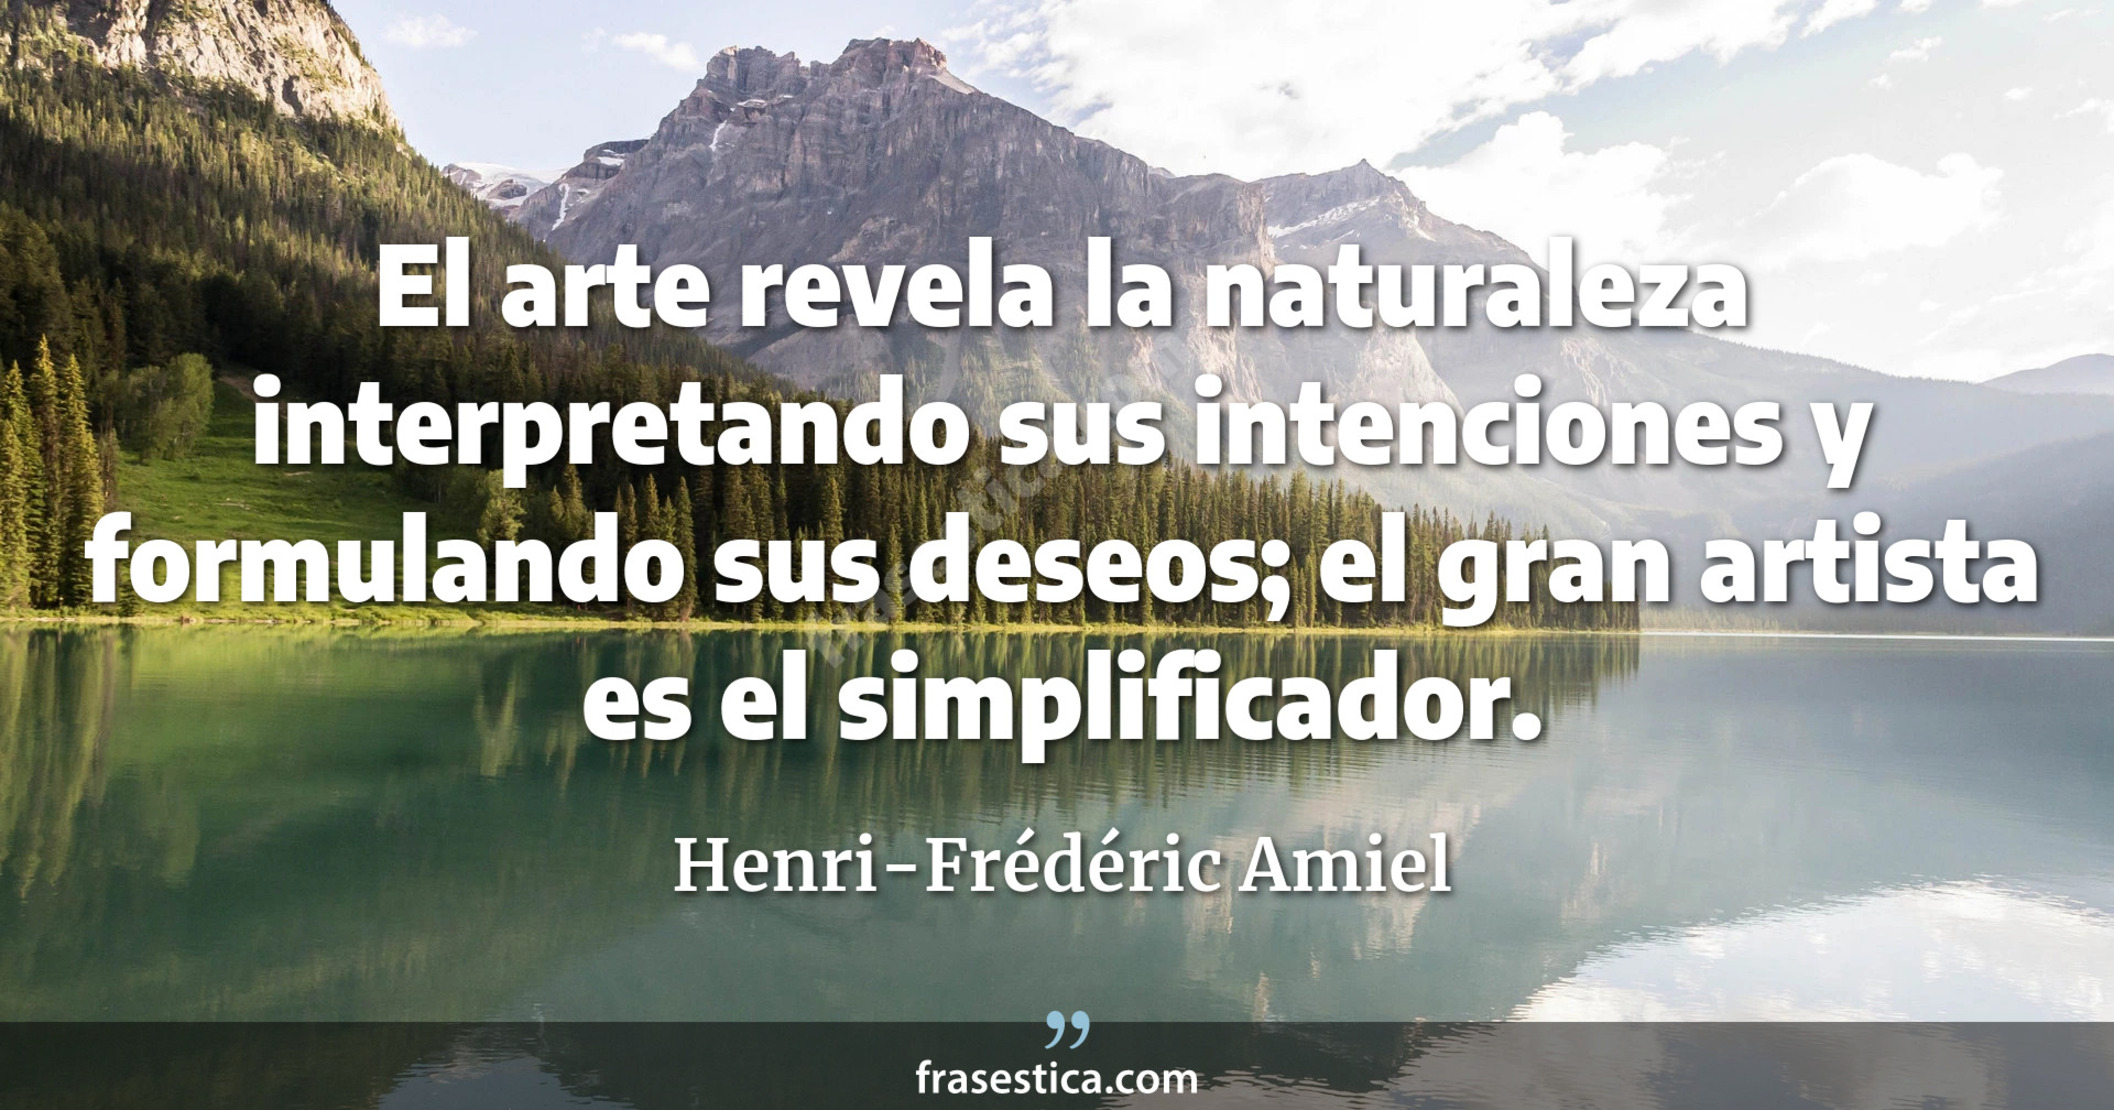 El arte revela la naturaleza interpretando sus intenciones y formulando sus deseos; el gran artista es el simplificador. - Henri-Frédéric Amiel